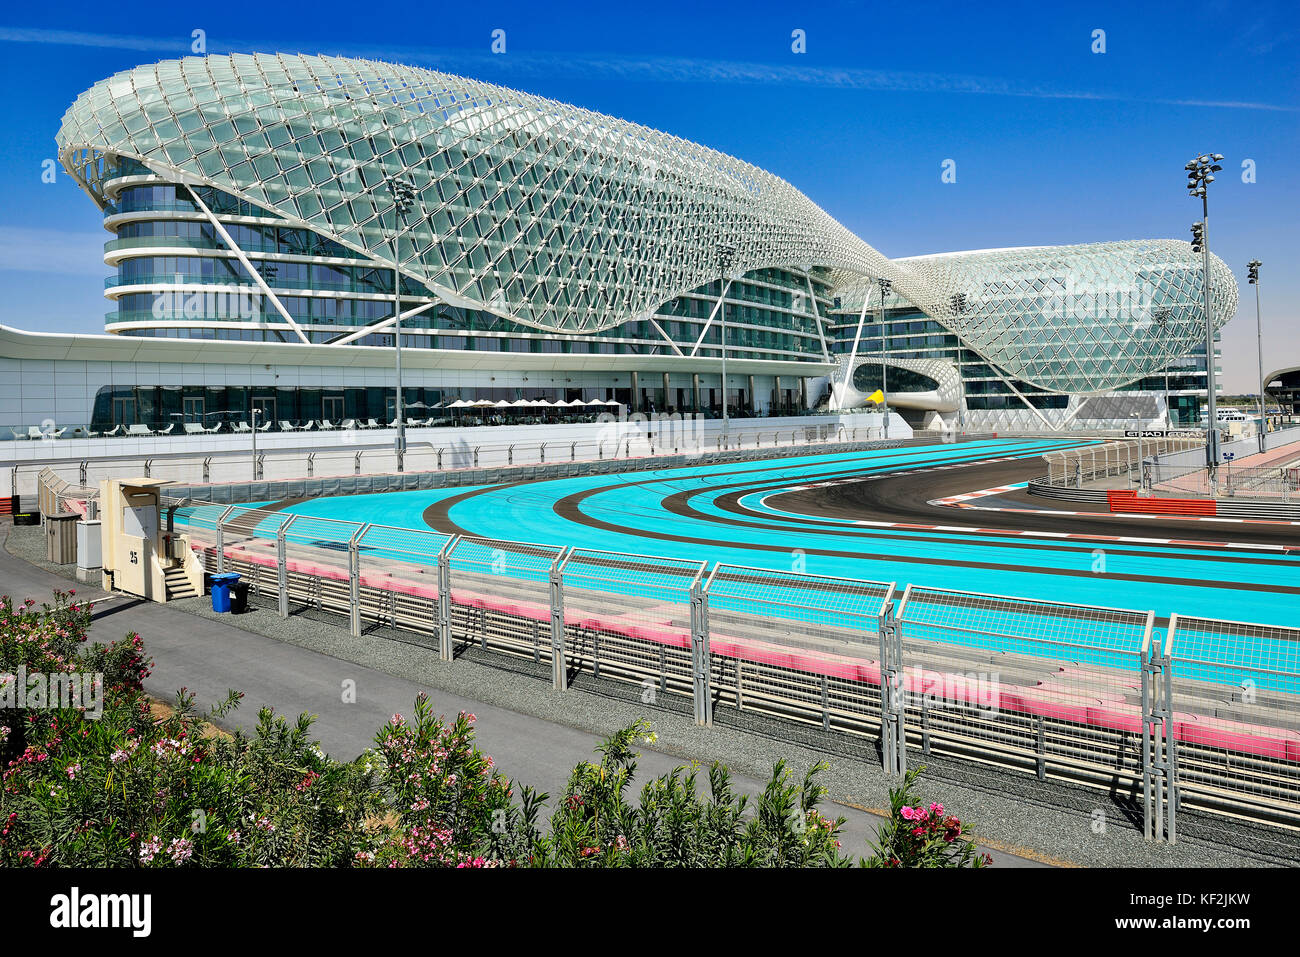 Le circuit Yas Marina Circuit de Formule 1, à l'arrière de l'hôtel Yas Marina, Yas Island, Abu Dhabi, Émirats arabes unis Banque D'Images